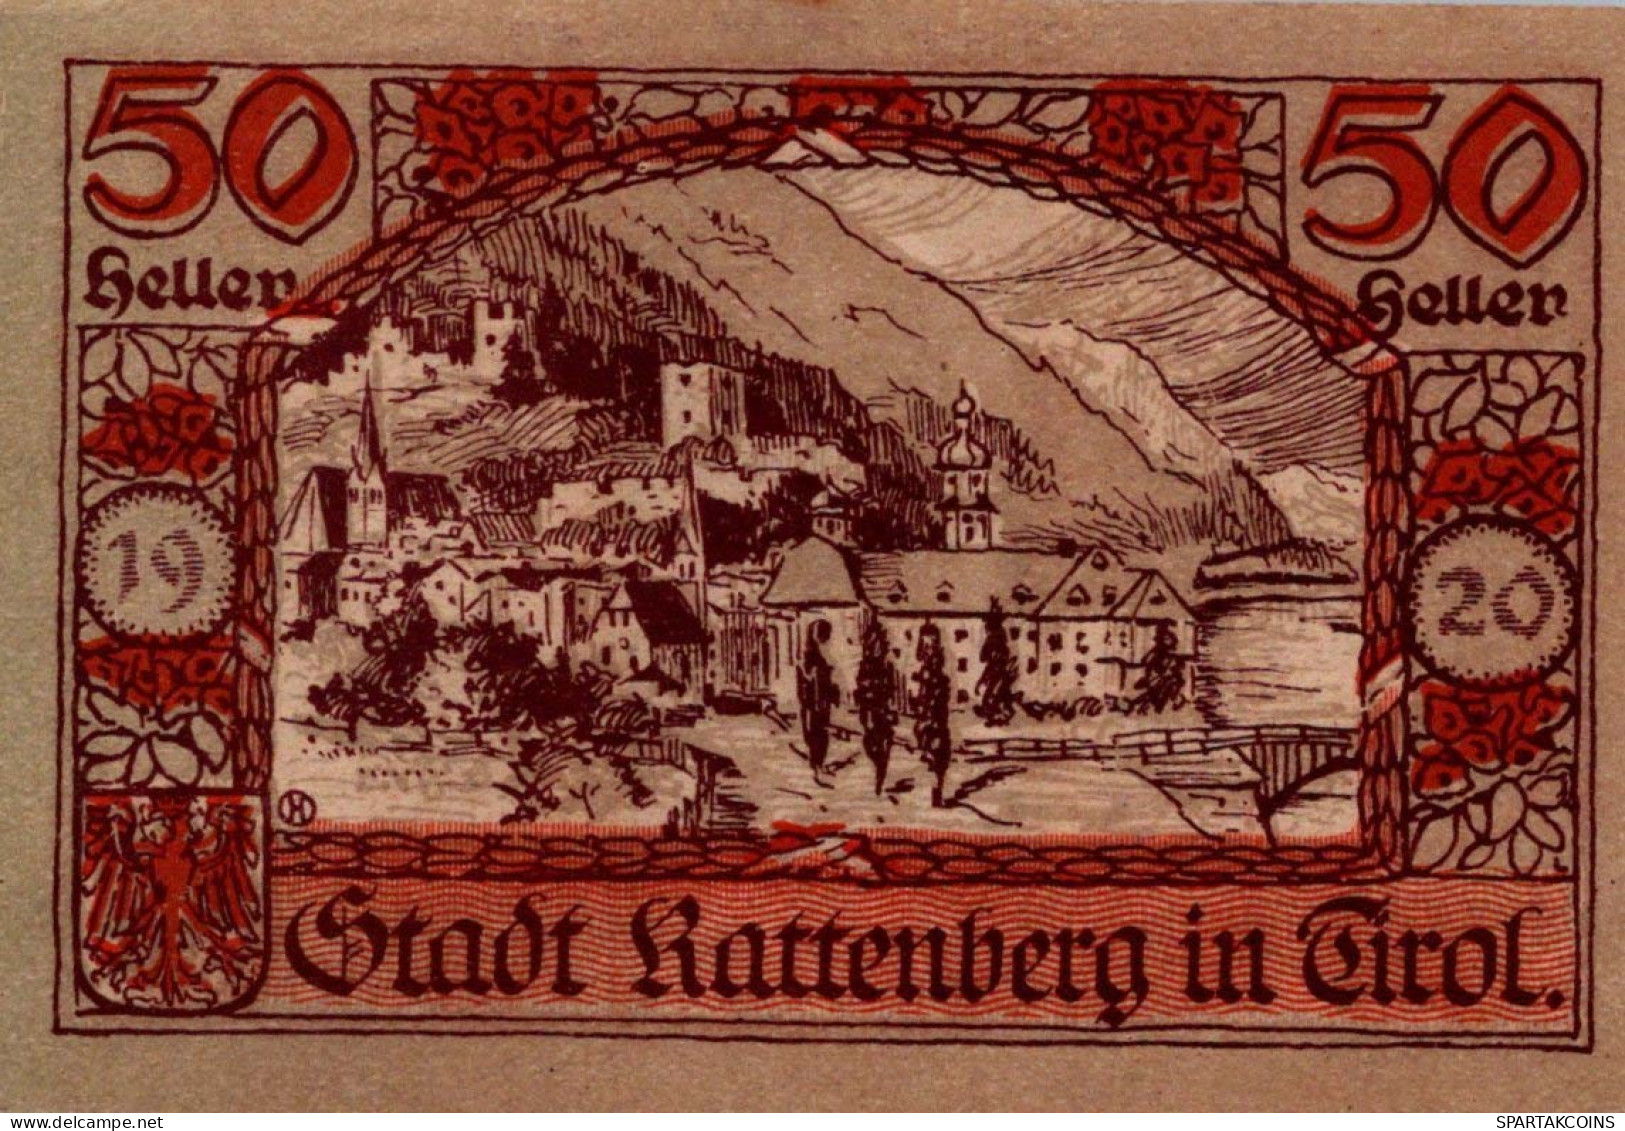 50 HELLER 1920 Stadt RATTENBERG Tyrol Österreich Notgeld Banknote #PE522 - Lokale Ausgaben